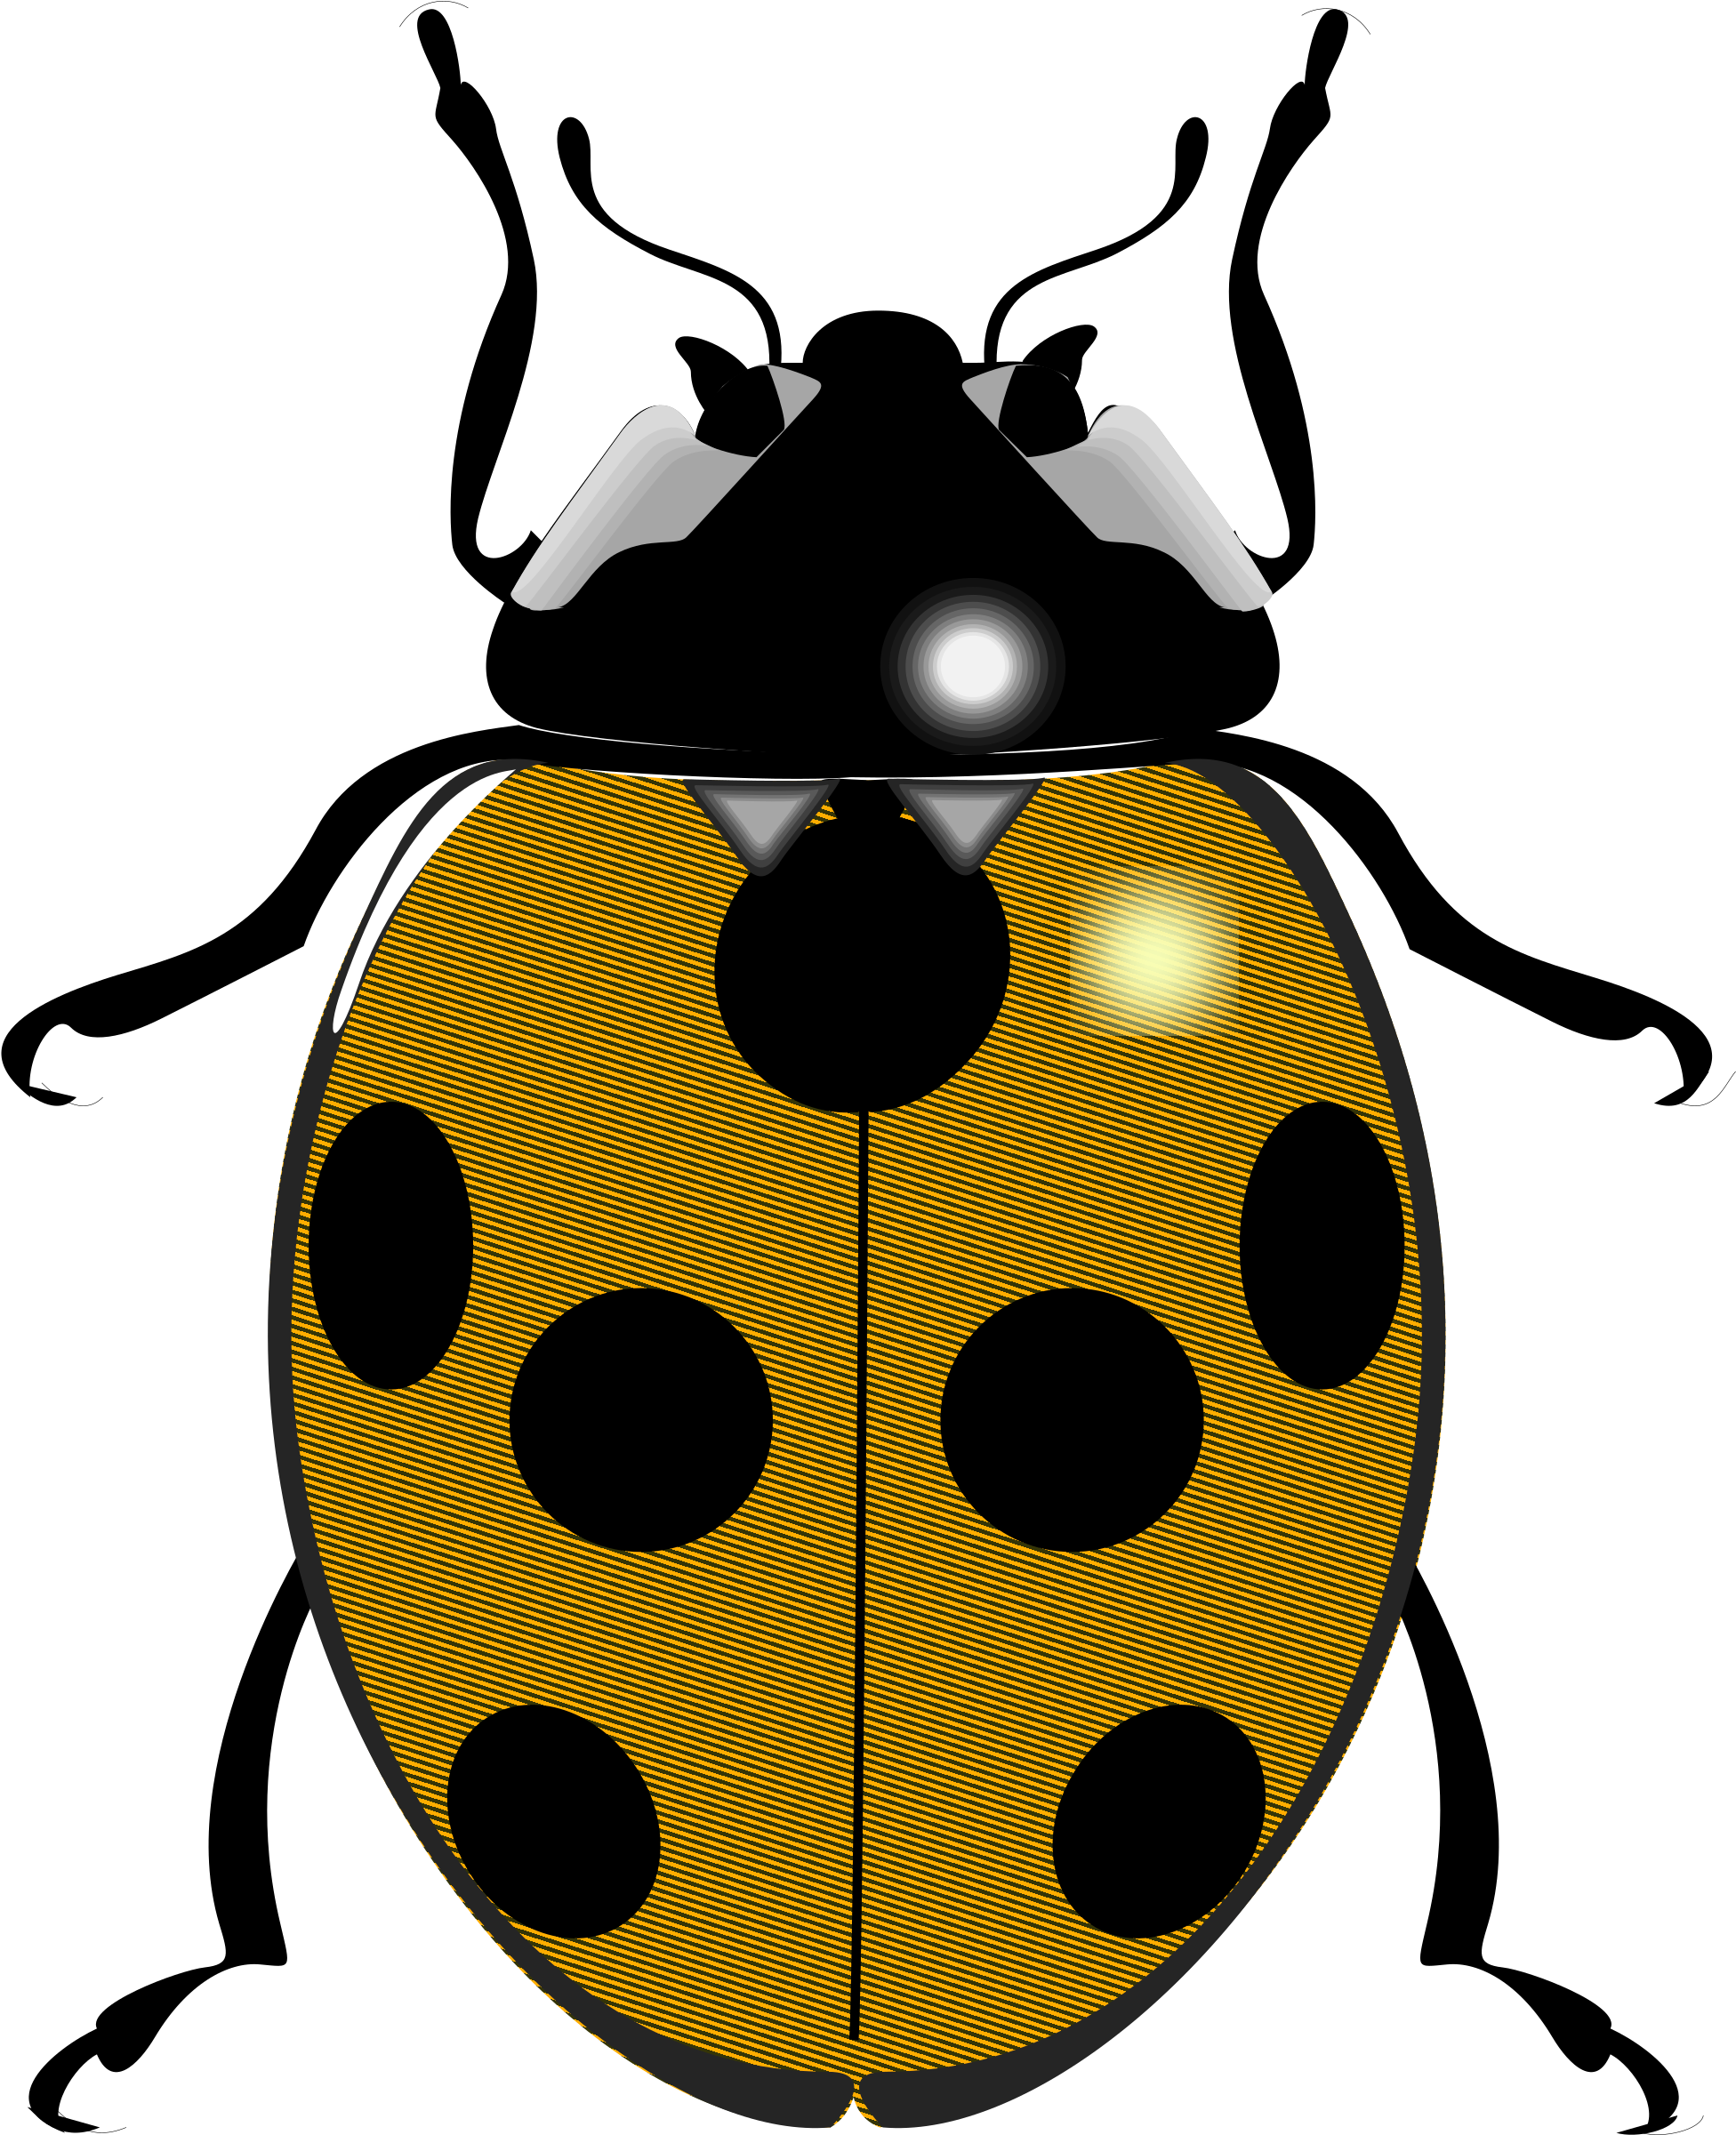 Open - Black And White Ladybug (2000x2484)